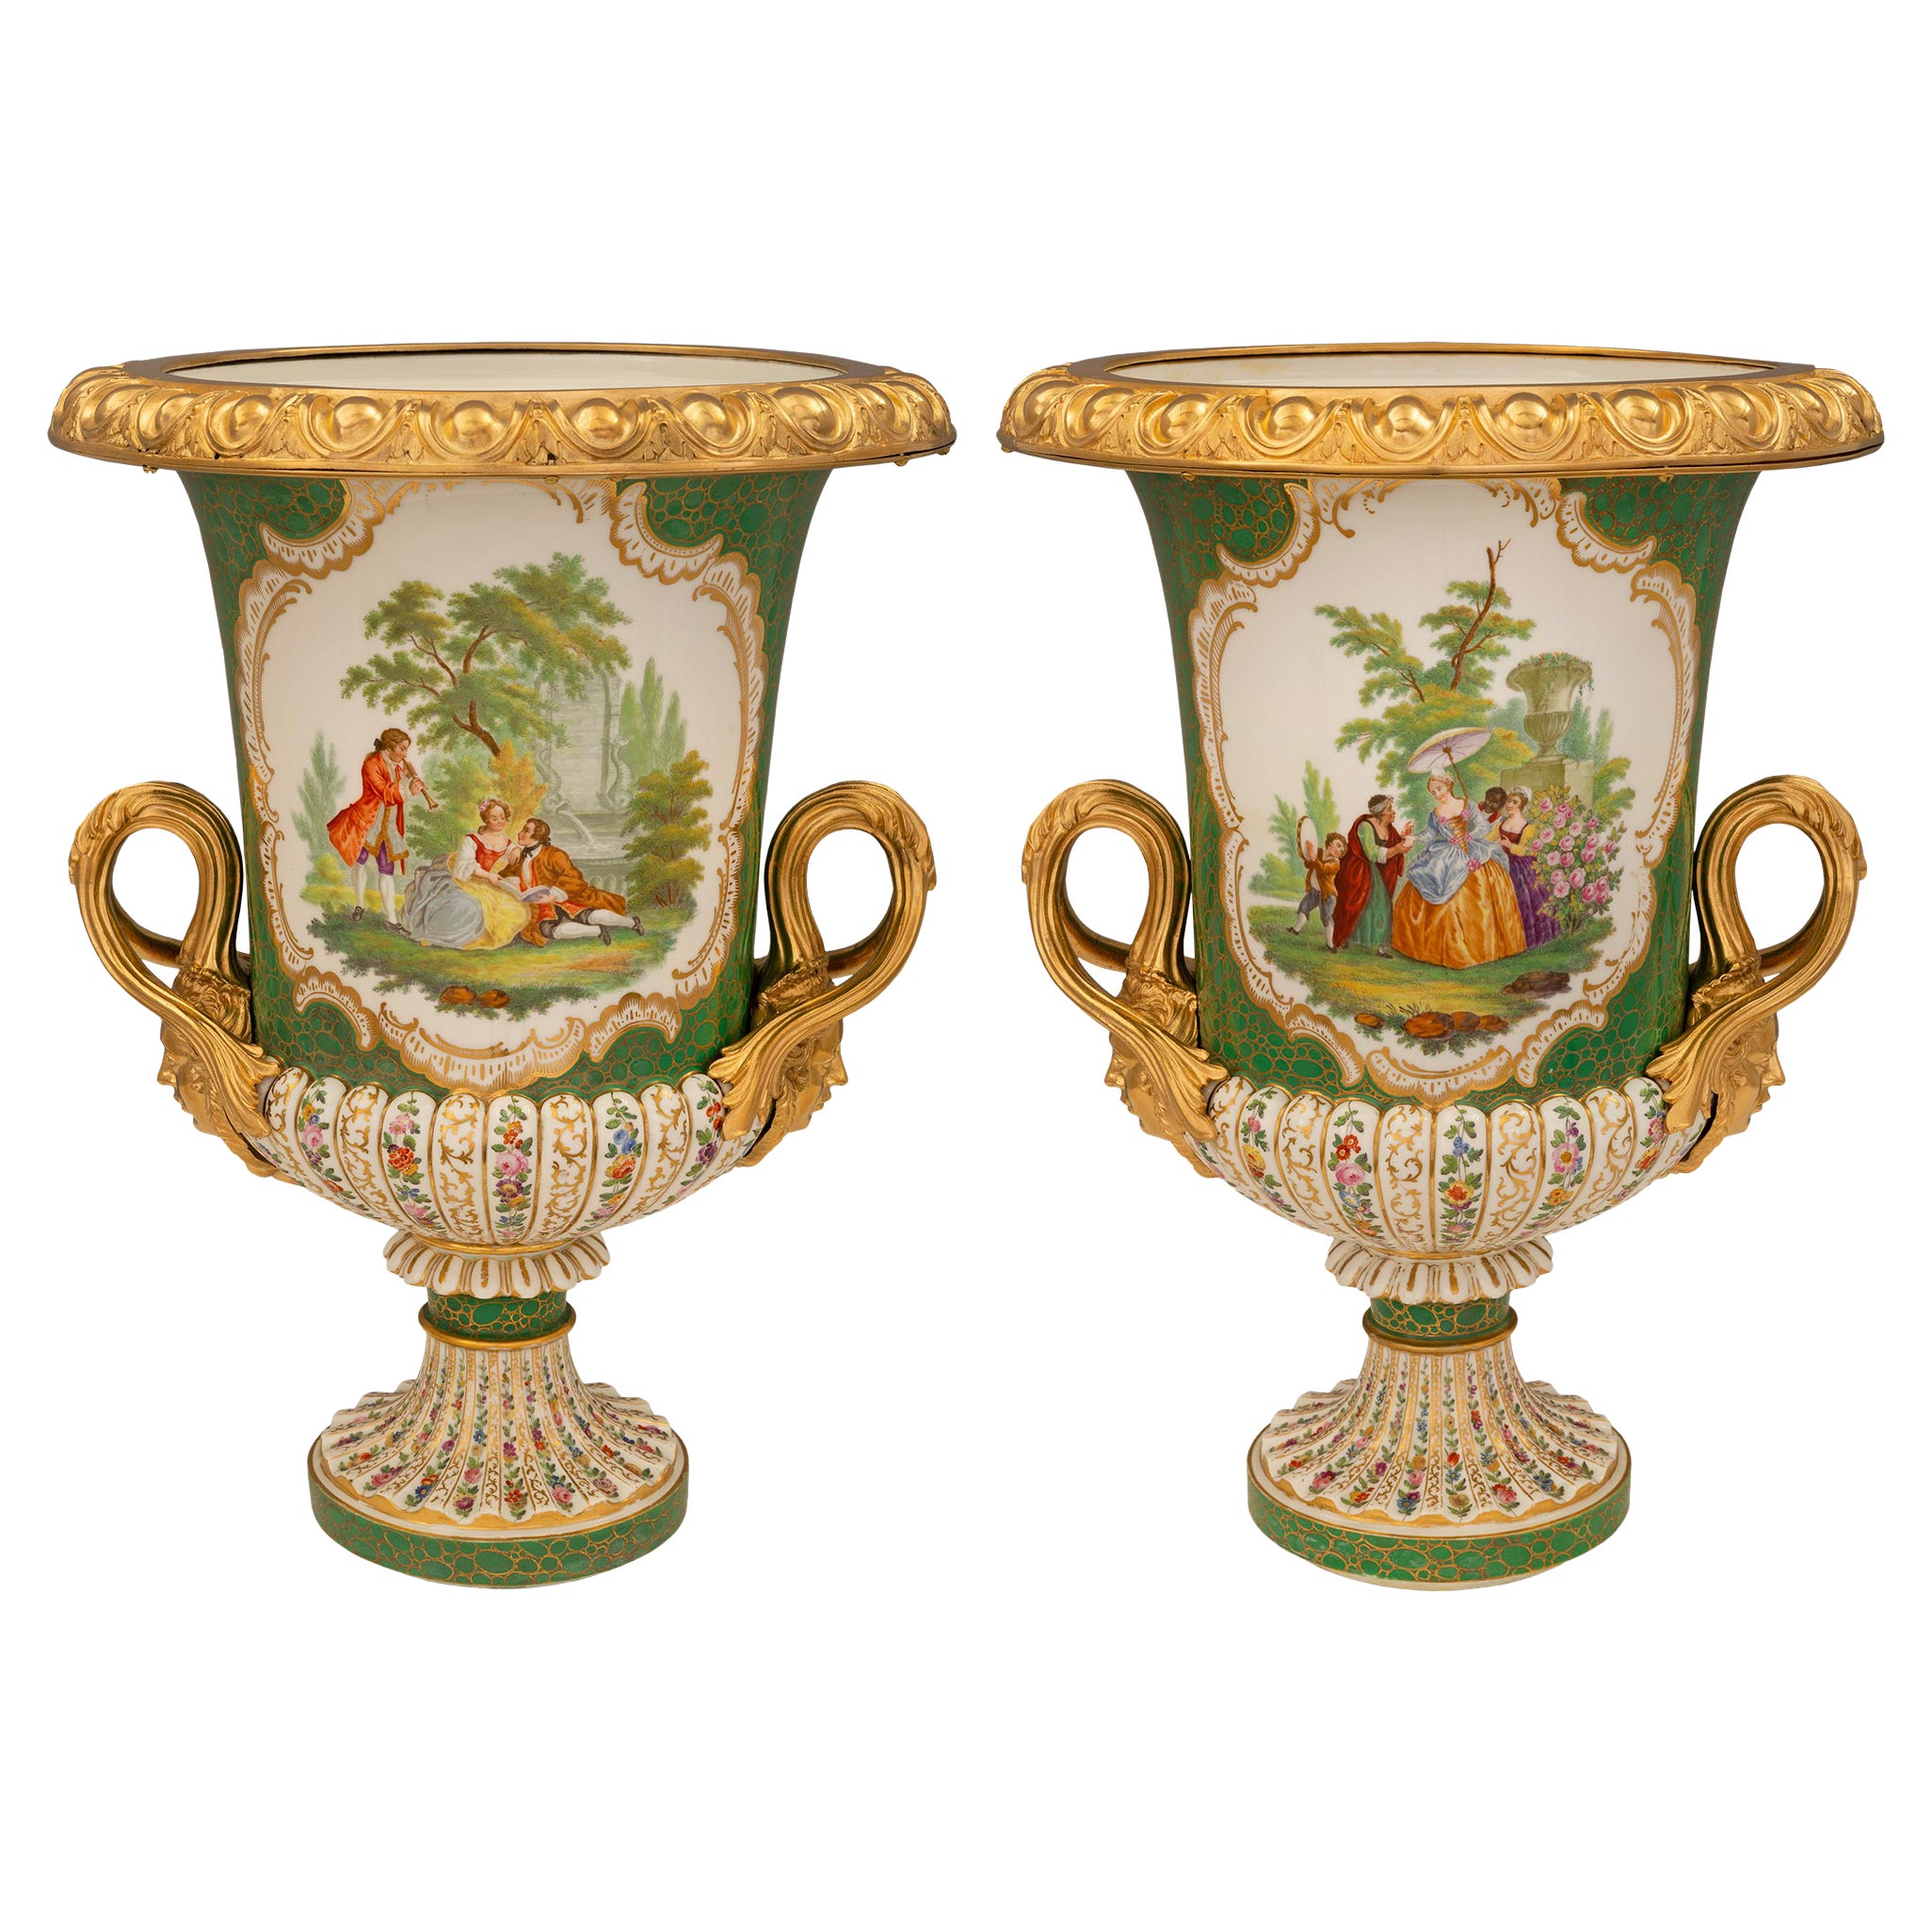 Paire d'urnes en porcelaine de Sèvres de style Louis XVI du XIXe siècle